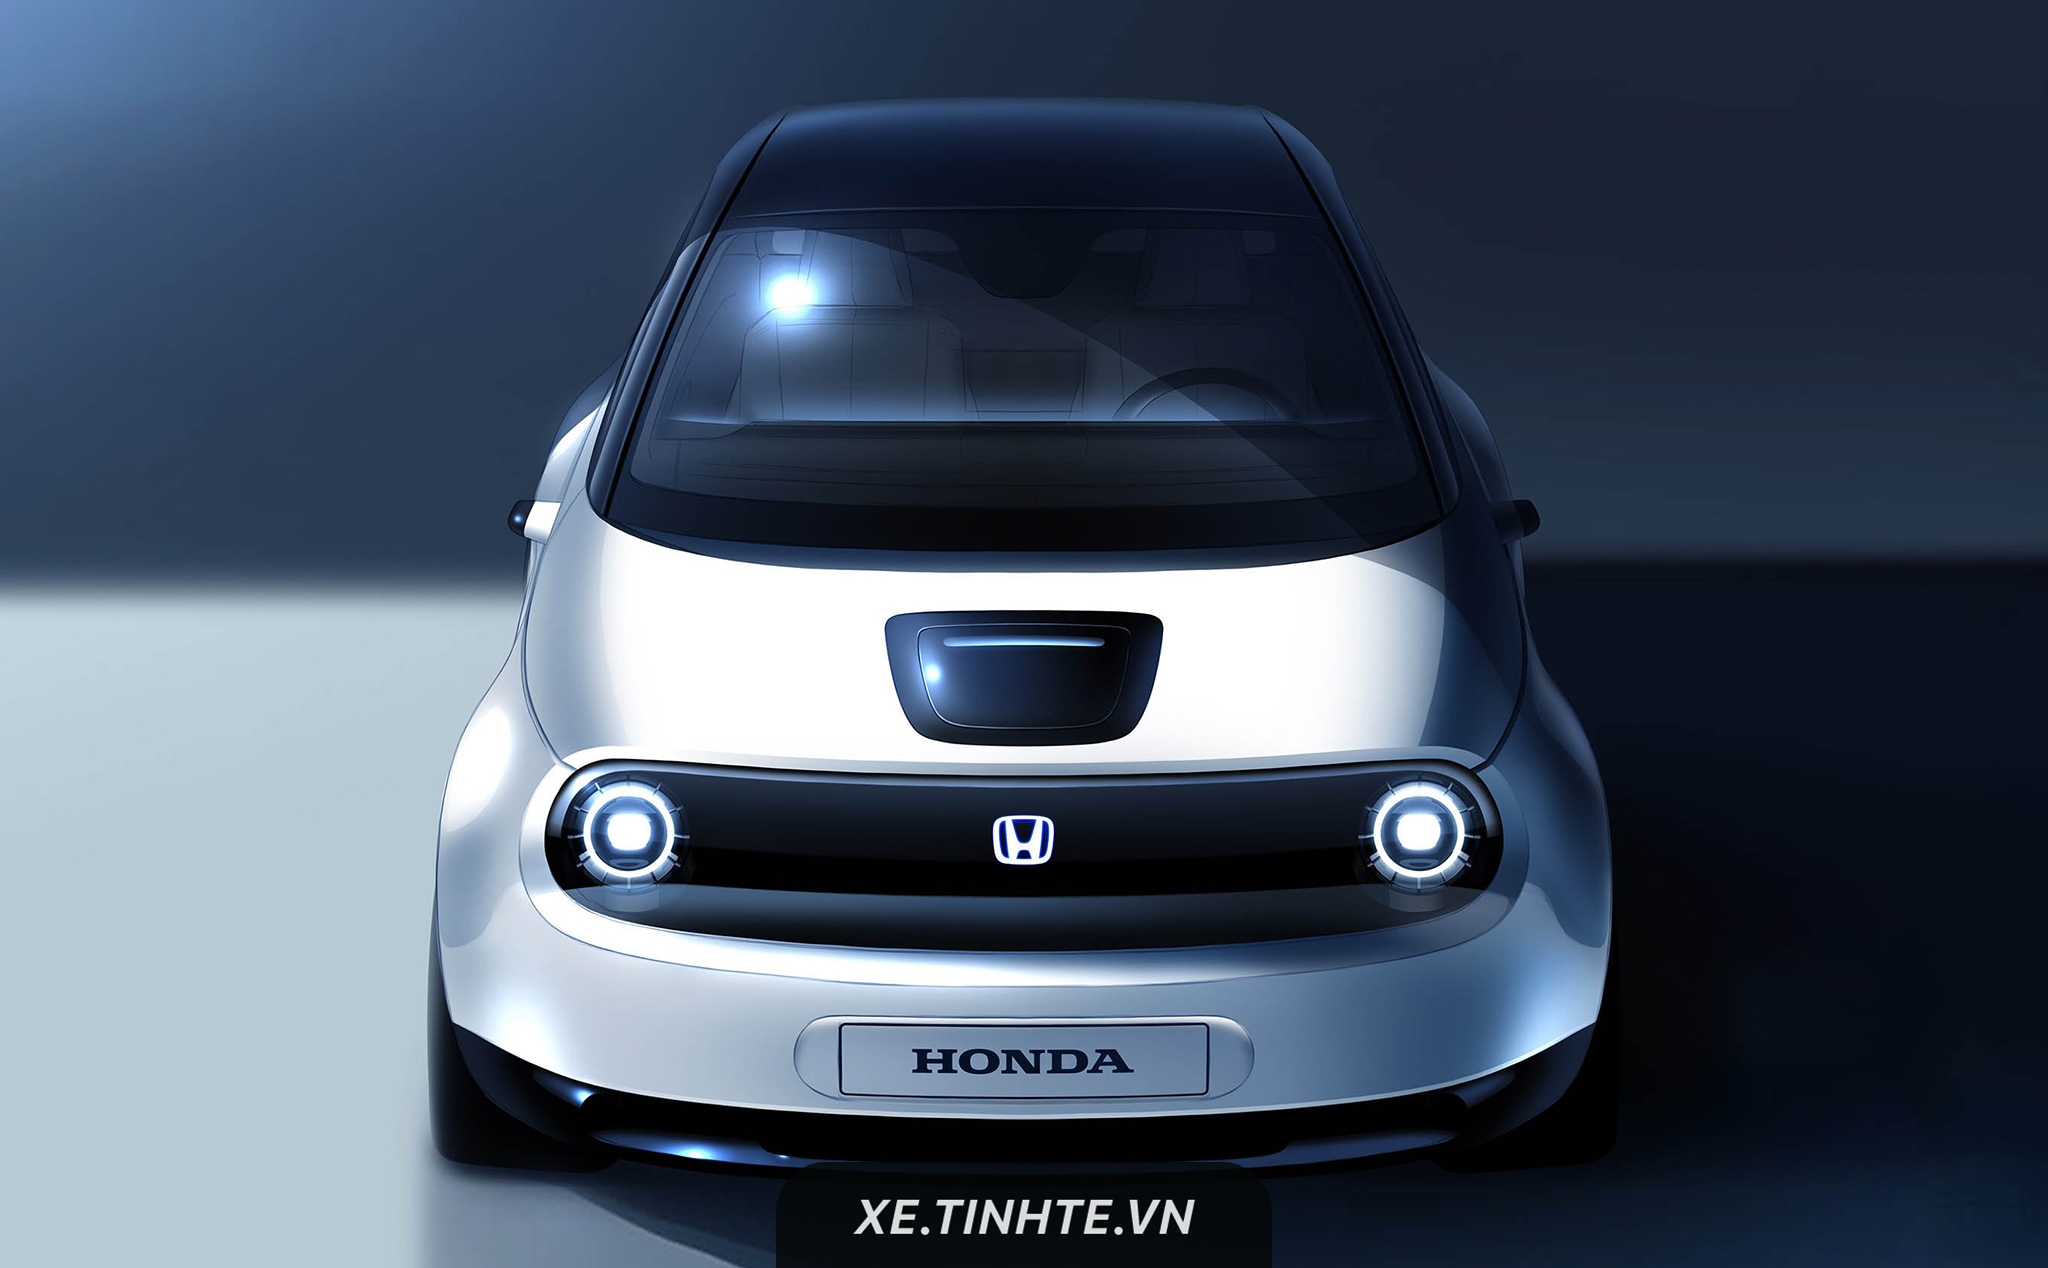 Honda xác nhận sẽ giới thiệu một nguyên mẫu xe điện mới tại Geneva Motor Show 2019